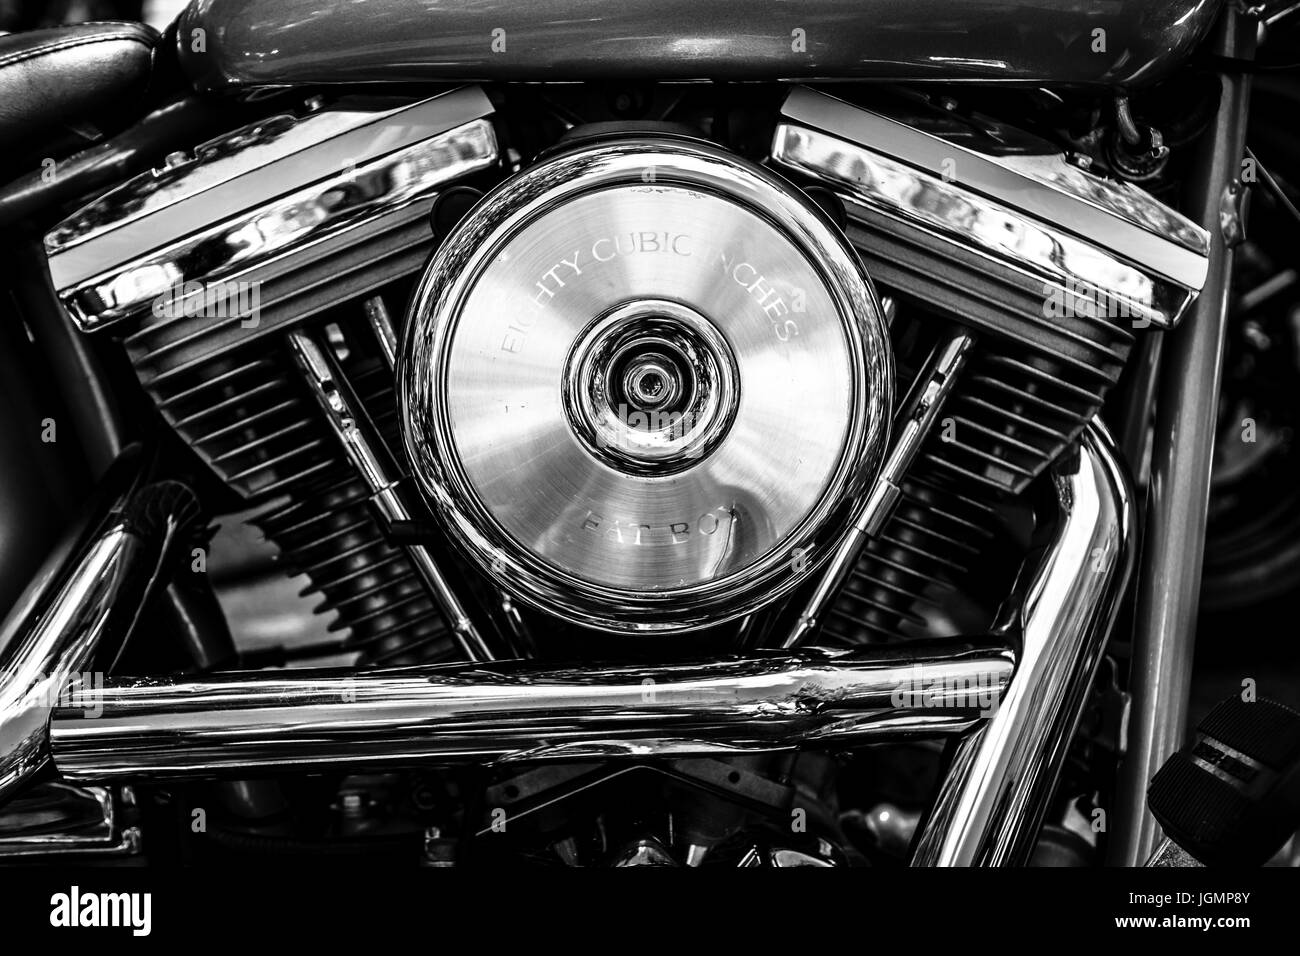 BERLIN - 17. Juni 2017: Motor Motorrad Harley-Davidson, close-up. Schwarz und weiß. Classic Days Berlin 2017. Stockfoto